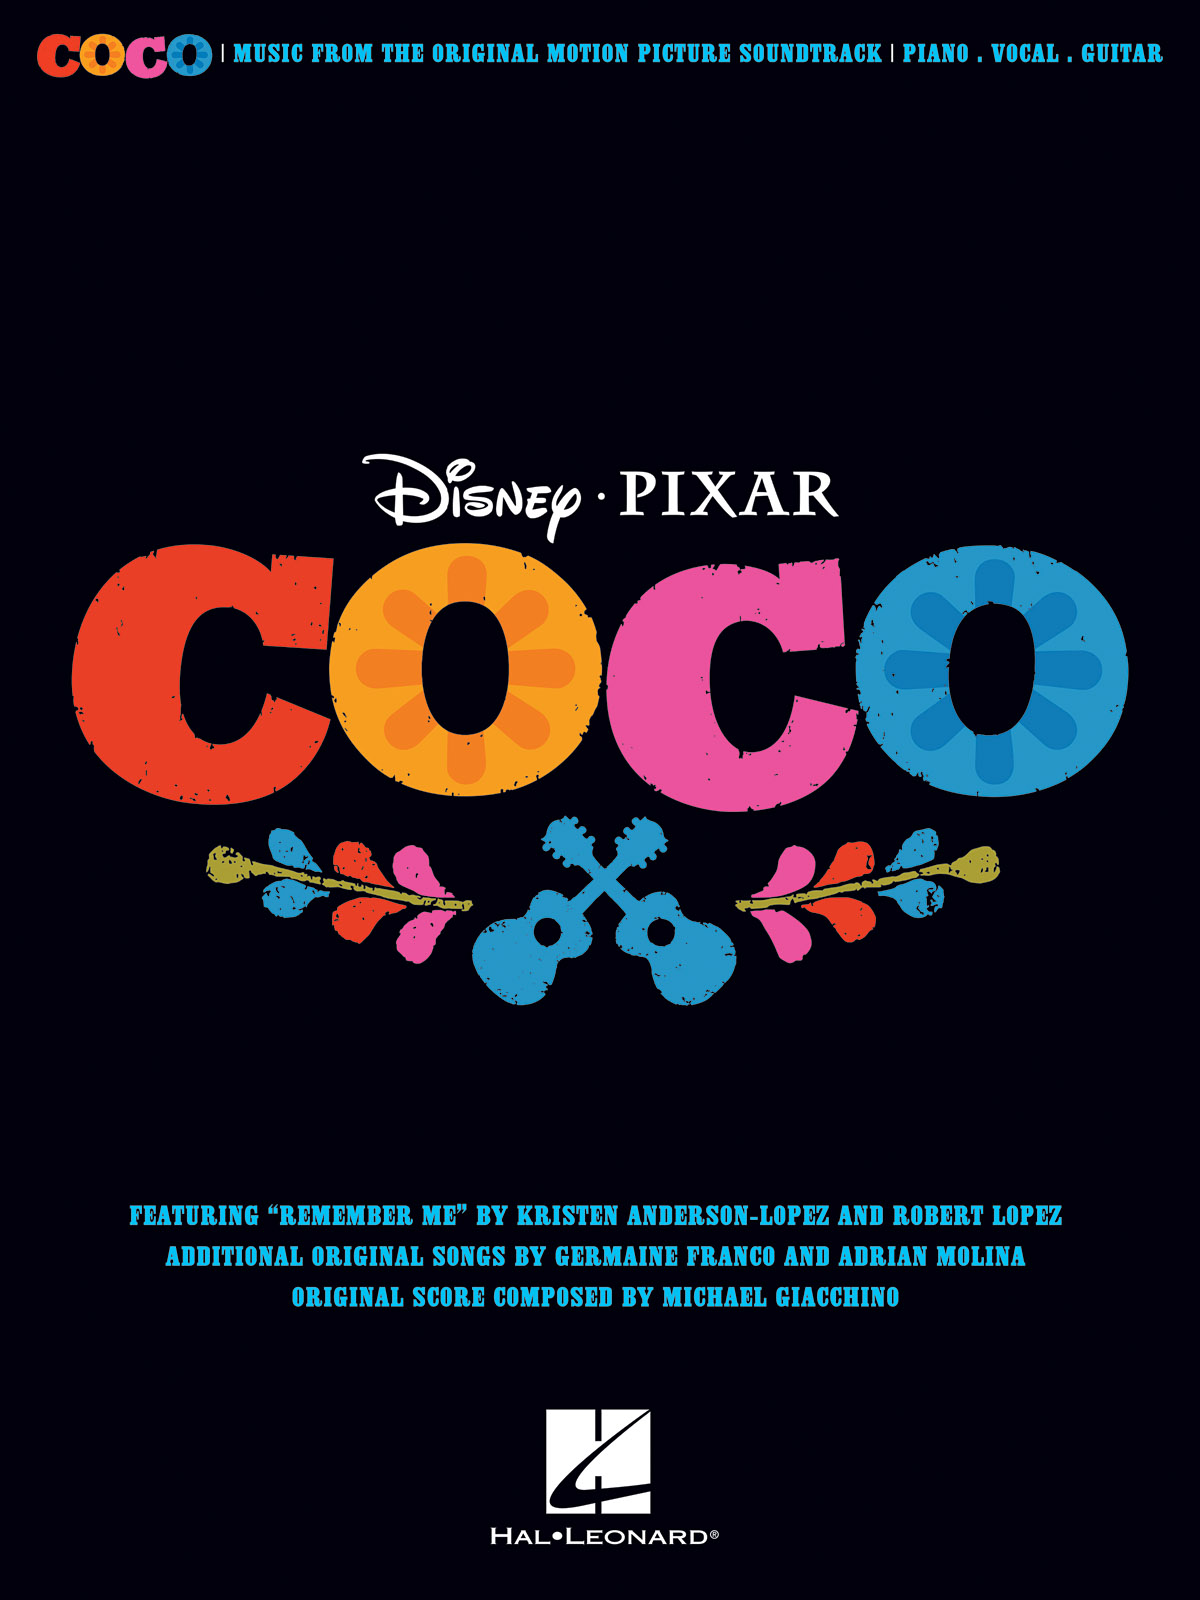 Kristen Anderson-Lopez Germaine Franco Adrian Molina: Disney/Pixar's Coco: